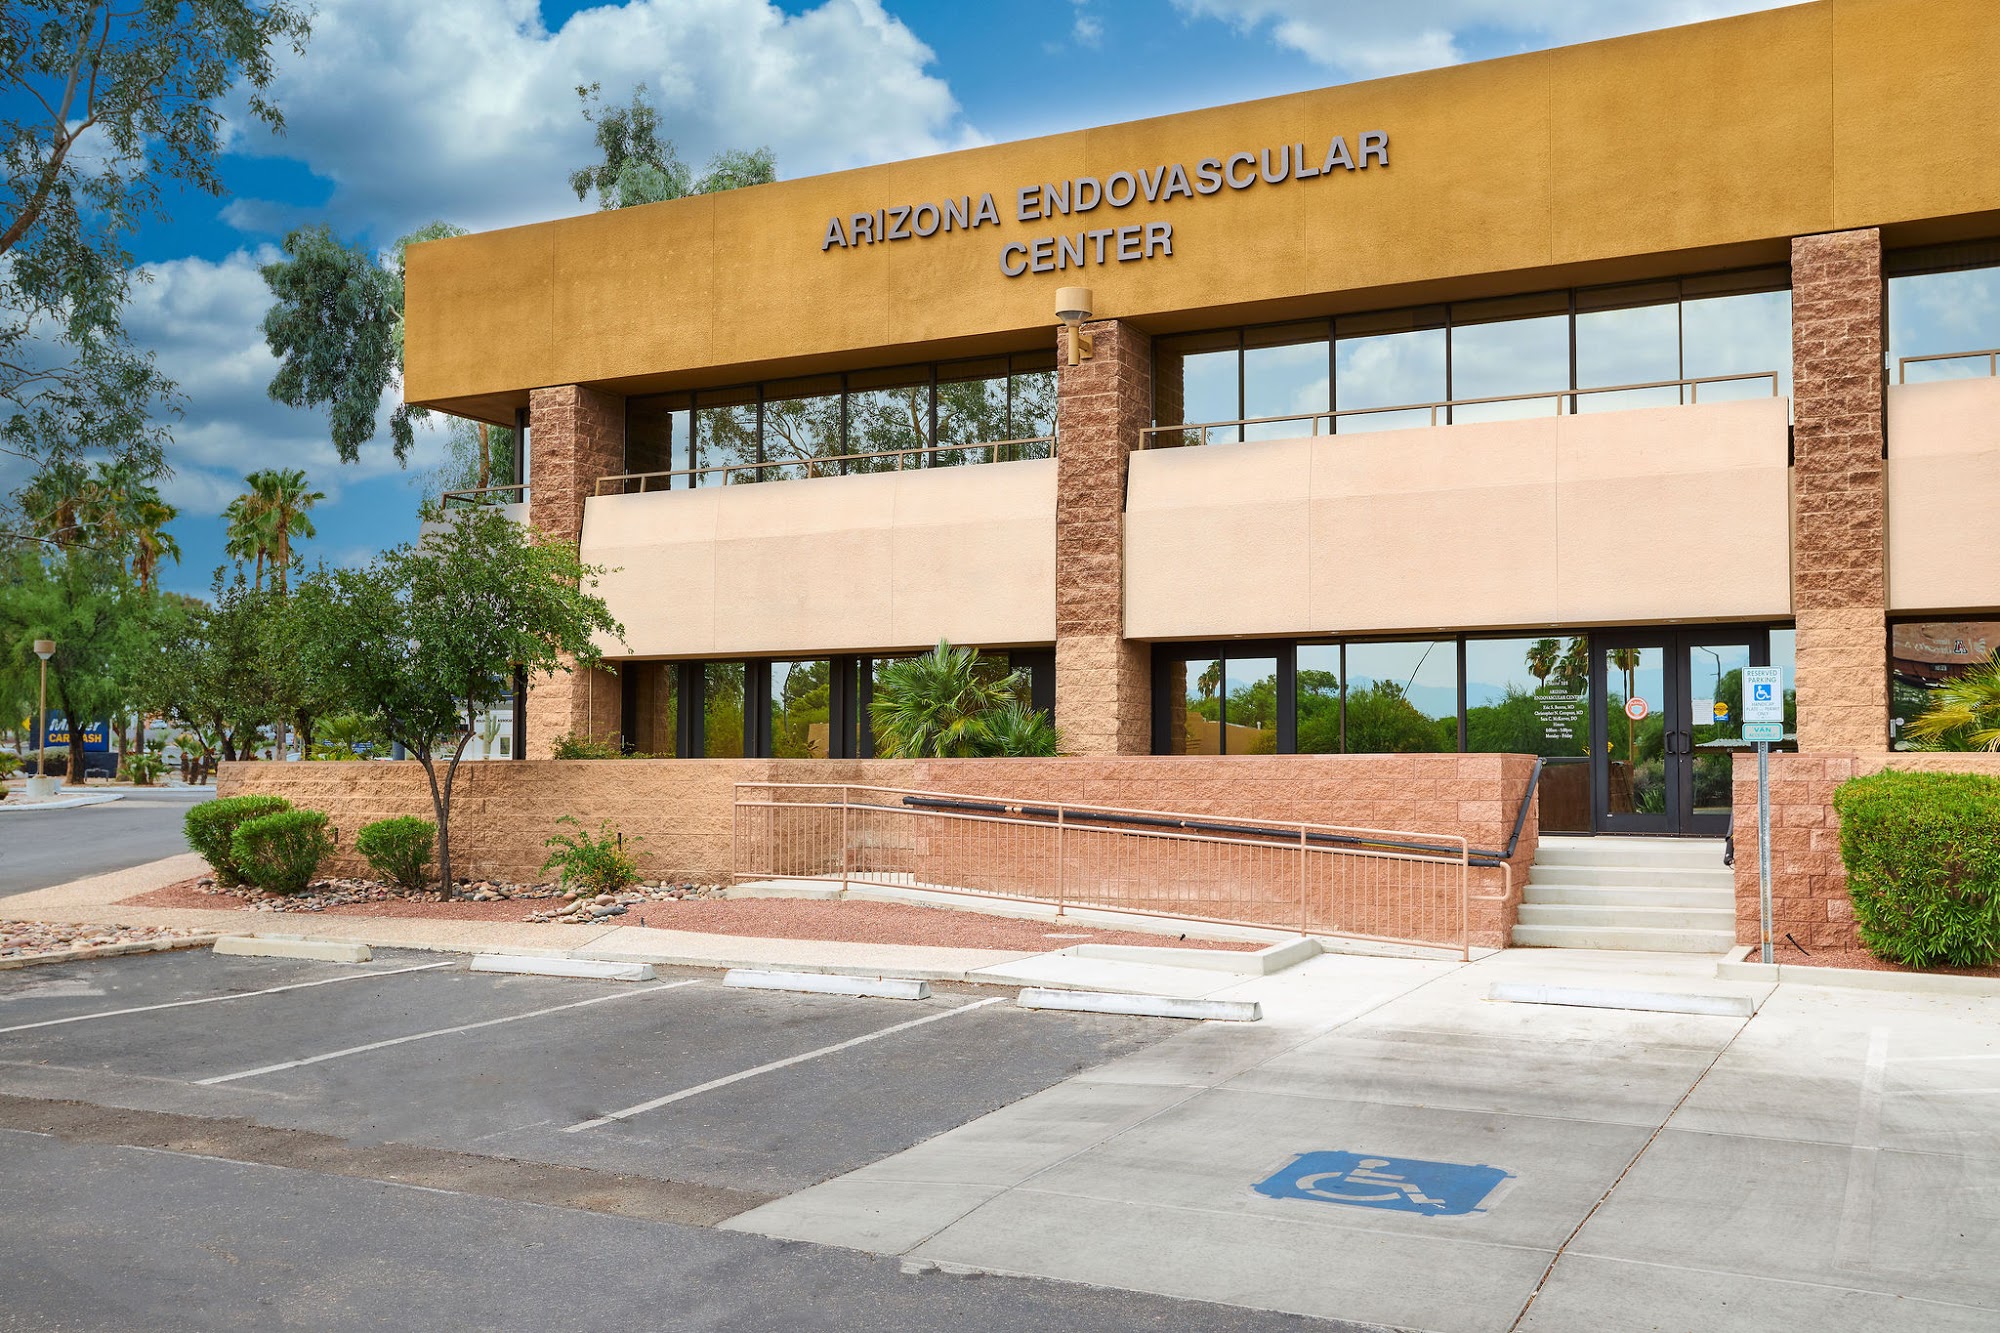 Arizona EndoVascular Center